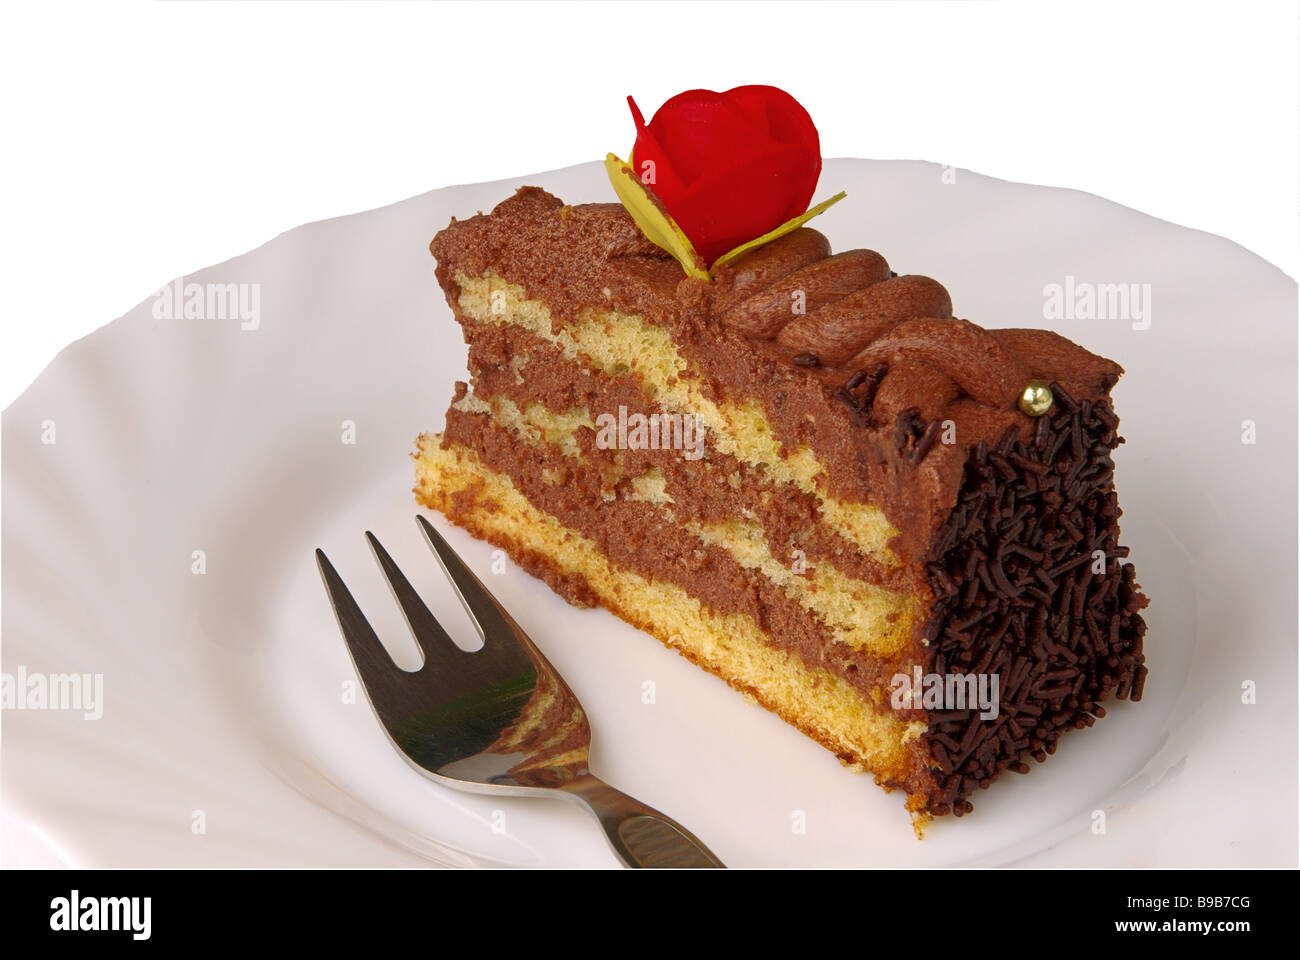 Schokoladentorte torta al cioccolato 02 Foto Stock